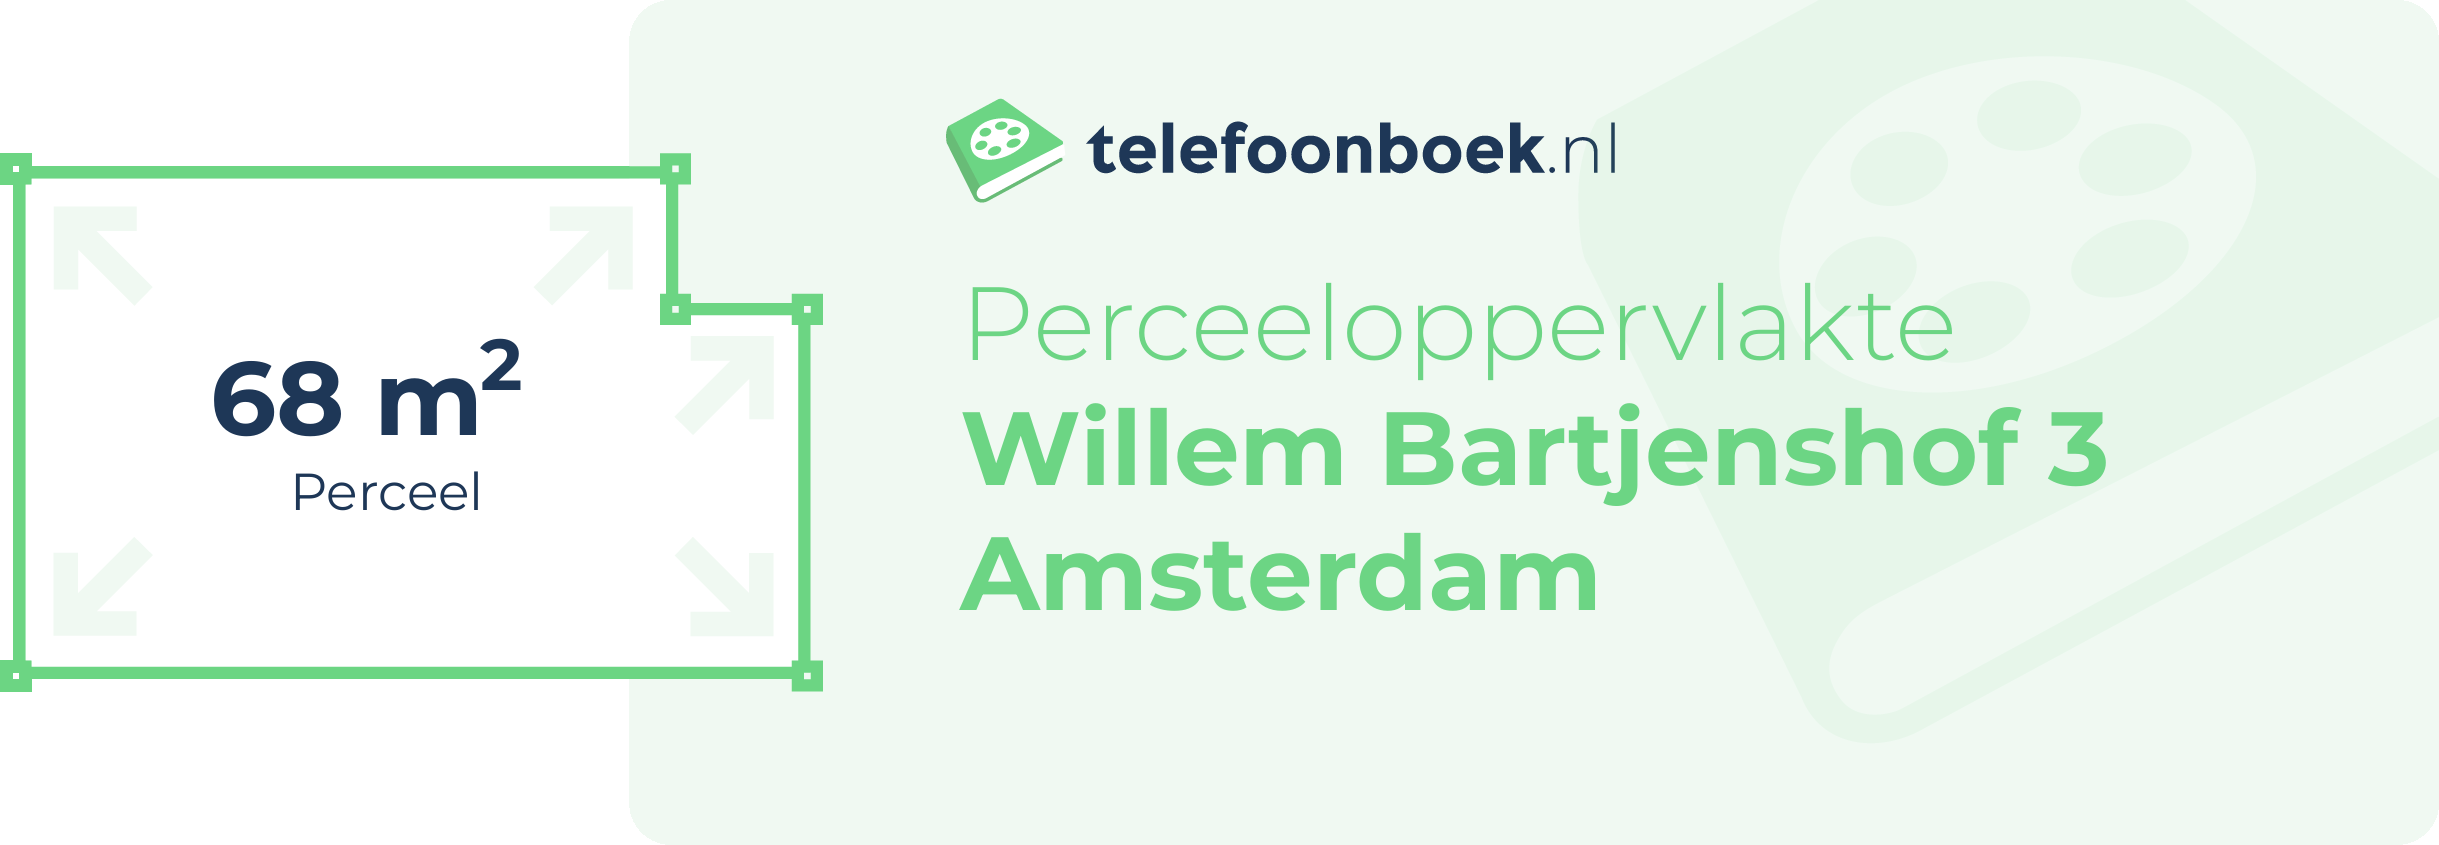 Perceeloppervlakte Willem Bartjenshof 3 Amsterdam